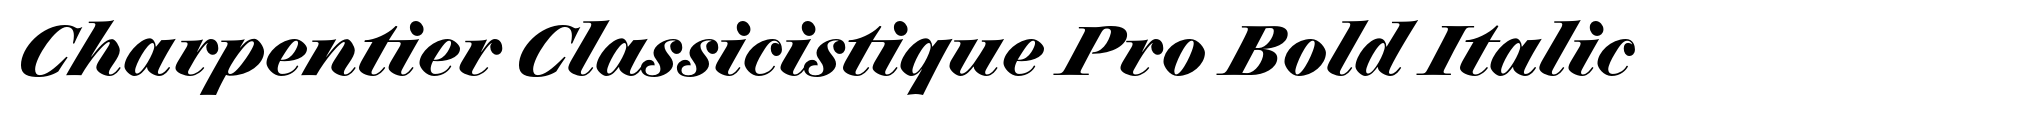 Charpentier Classicistique Pro Bold Italic image